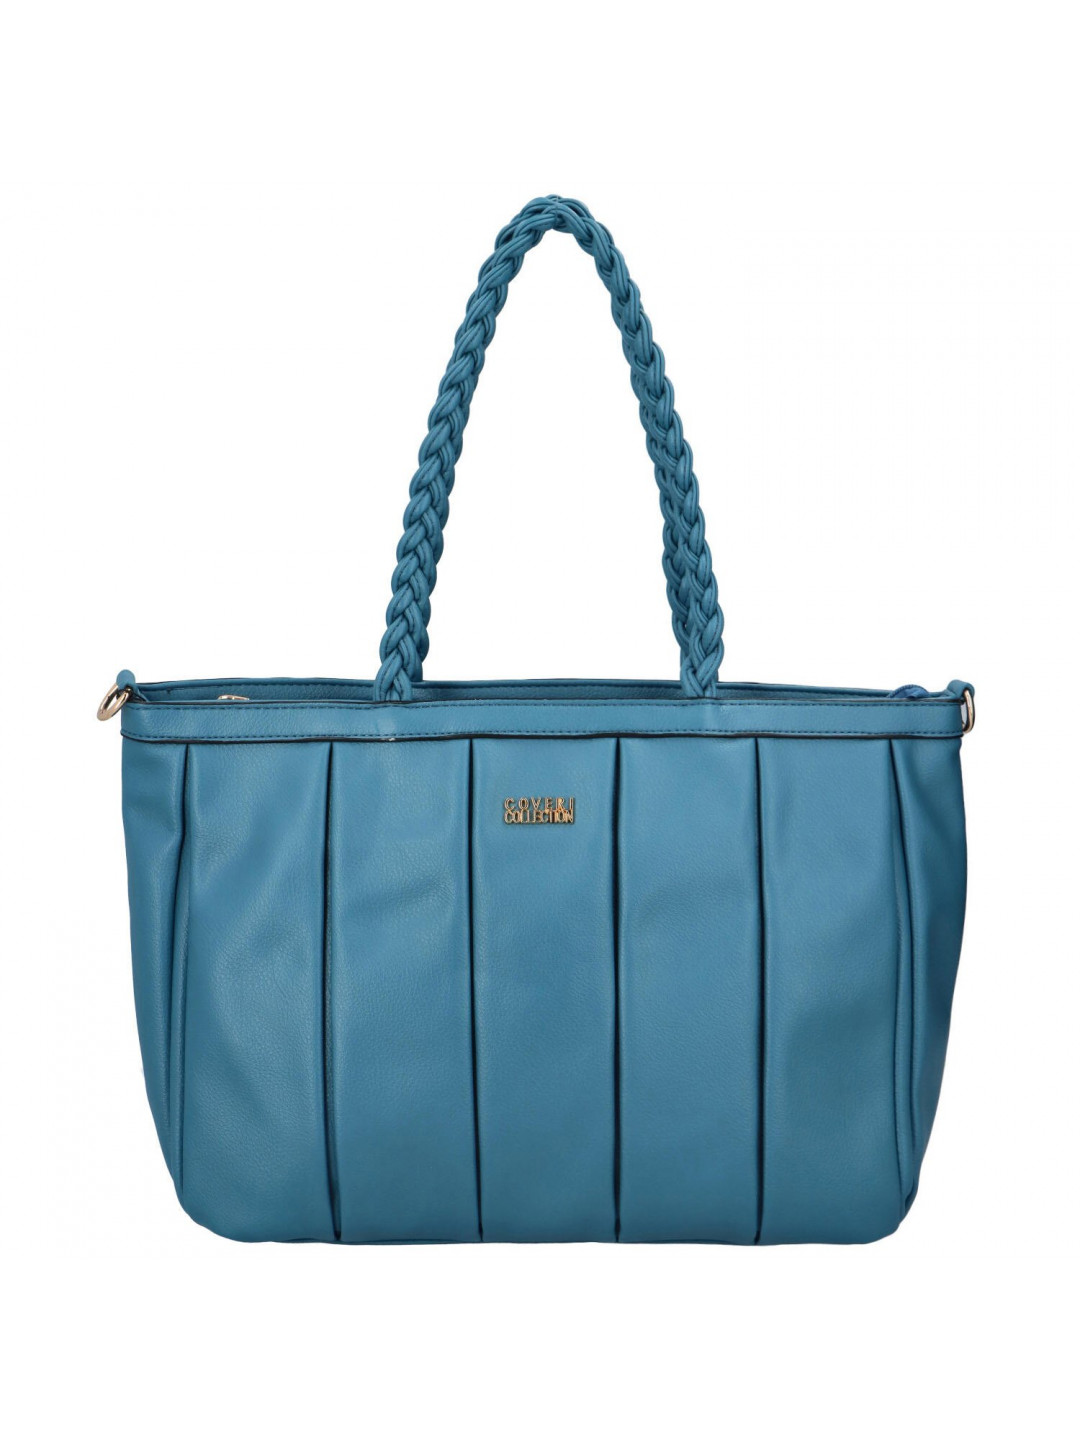 Dámská koženková kabelka přes rameno se stylovými záhyby Mila modrá